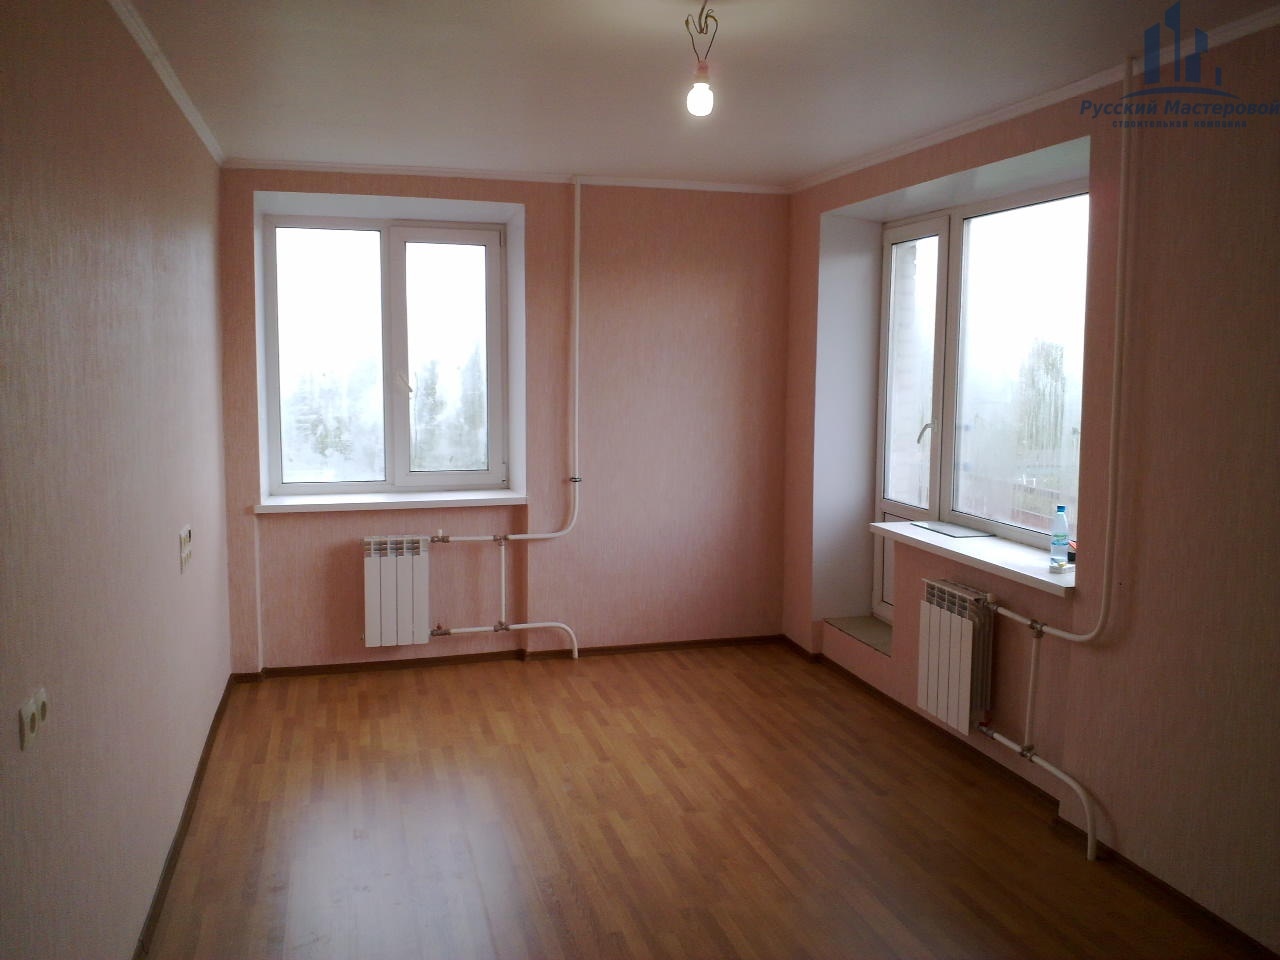 Косметический ремонт квартир от строительной компании Русский Мастеровой